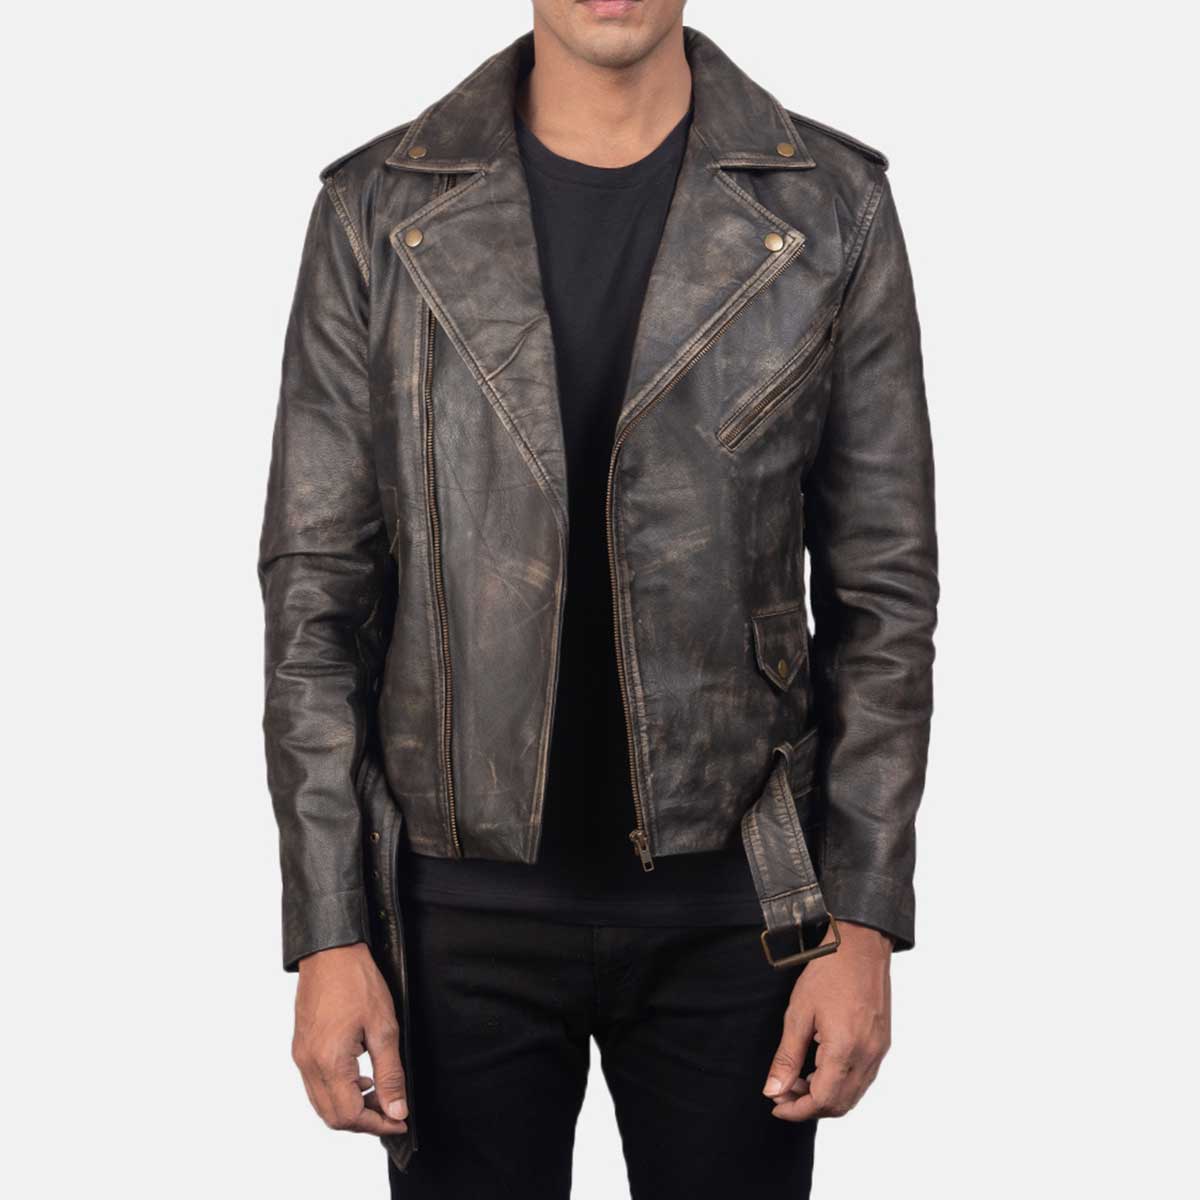 Vintage Leather Jacket for Men & Women- The Vintage Leather